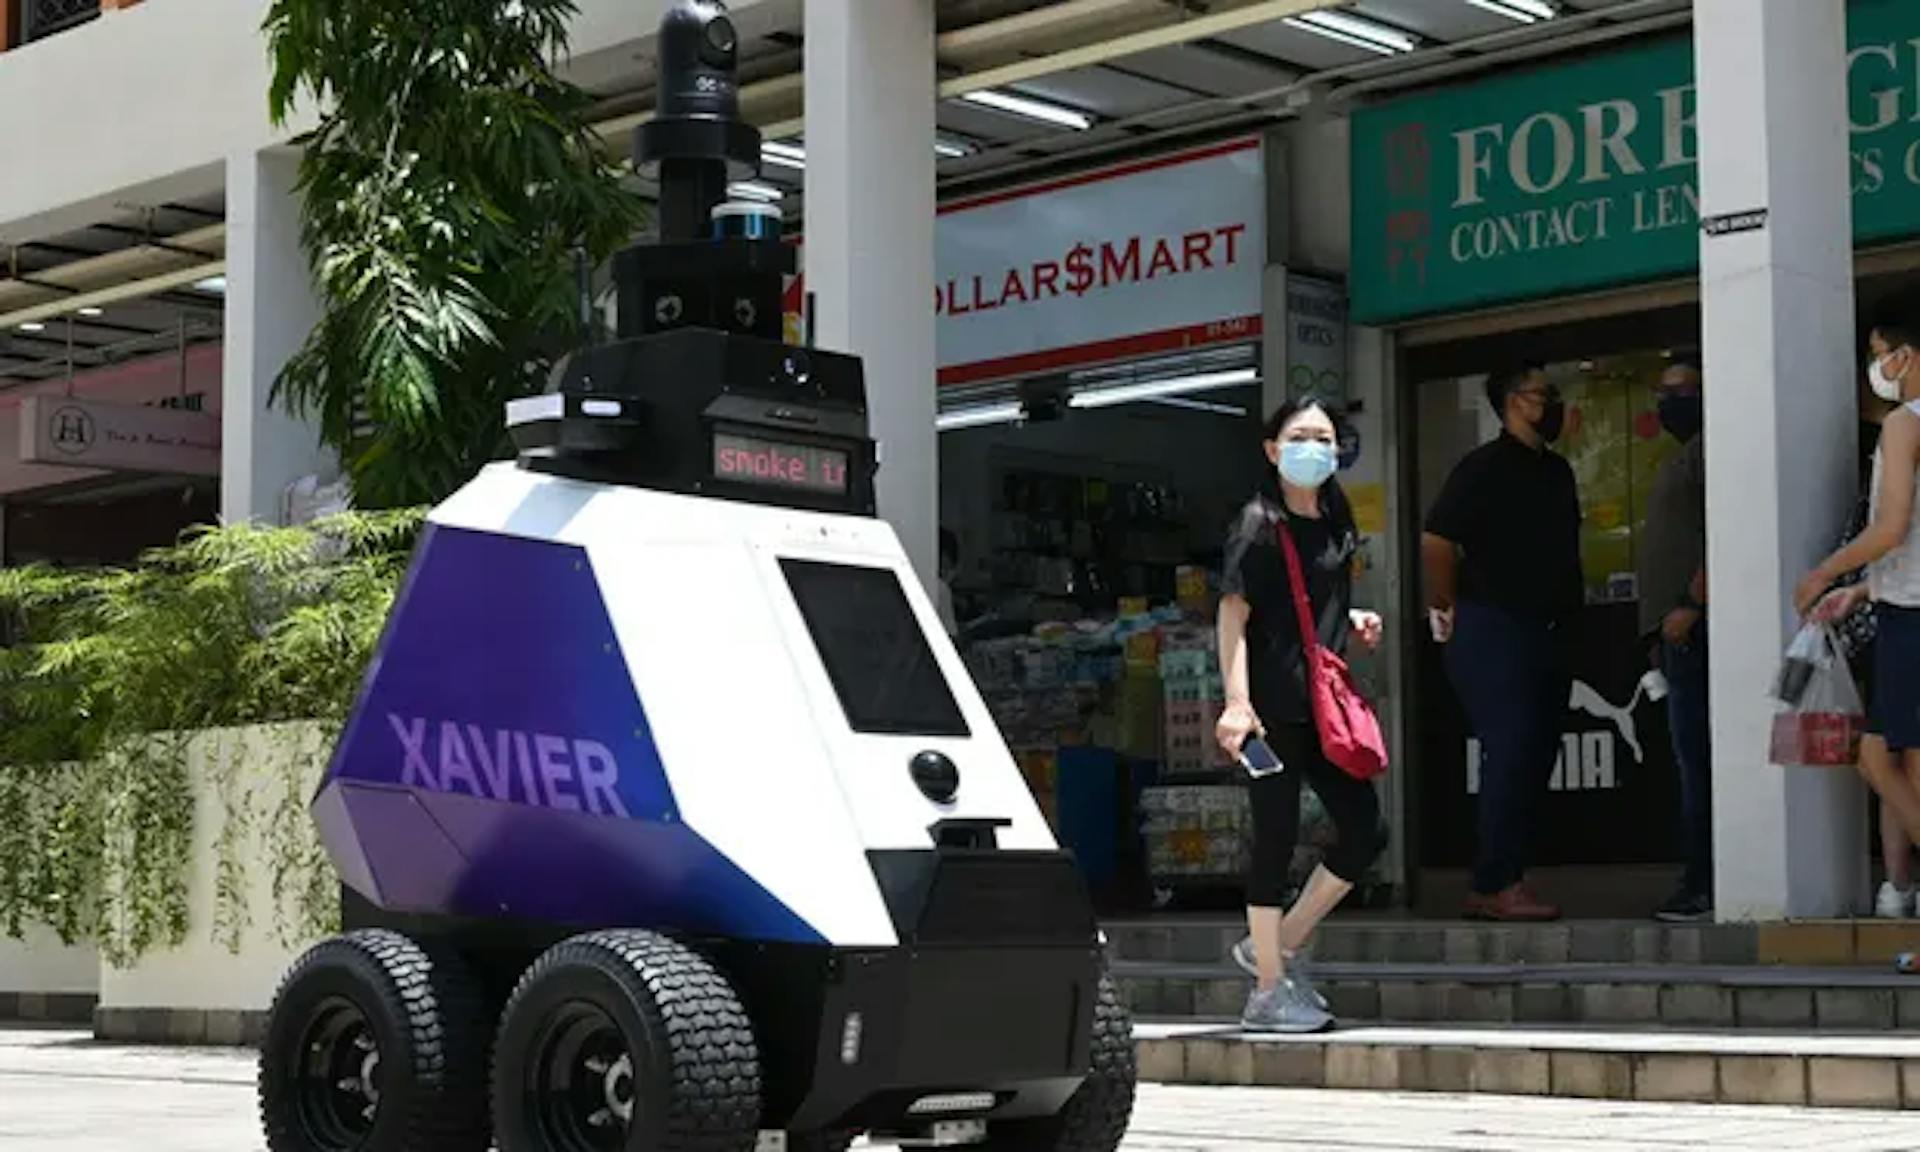 Autônomo "Xavier", desenvolvido pela Home Team Science and Technology Agency (HTX) em seu teste de 3 semanas em Cingapura. // O guardião